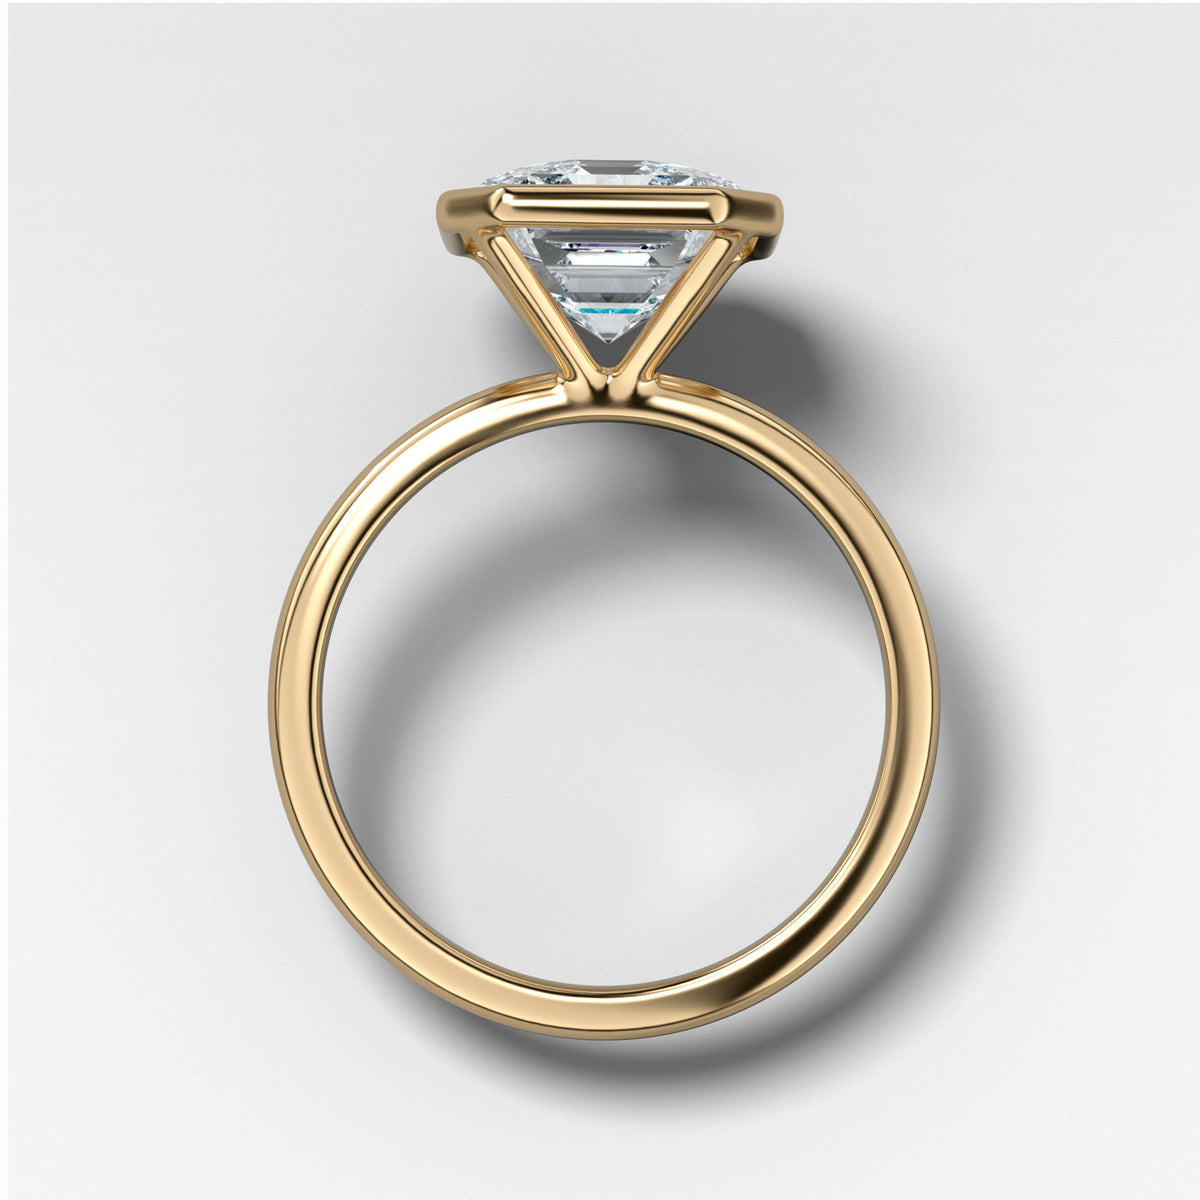 Penumbra Bezel Set Engagement Ring With Asscher Cut